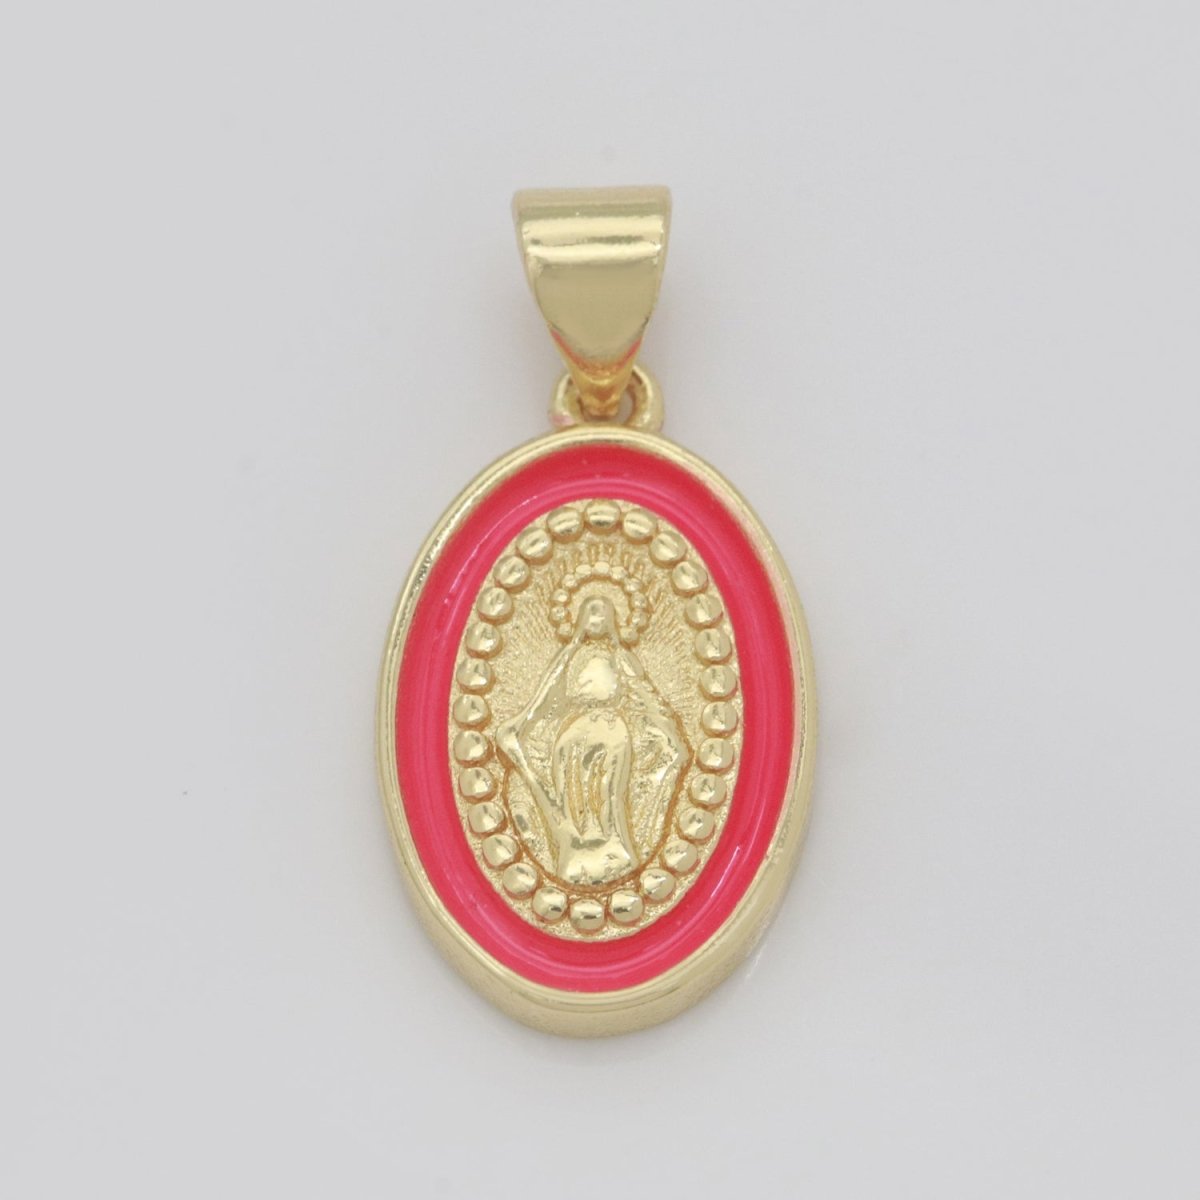 Dainty Miraculous Lady Charm gold medallion Charm, gold filled Virgin Mary religious medal Saint Pendant Religious Coin Catholic Enamel Jewelry N-1373 N-1374 N-1375 N-1376 N-1377 N-1378 N-1379 N-1380 N-1381 N-1382 - DLUXCA